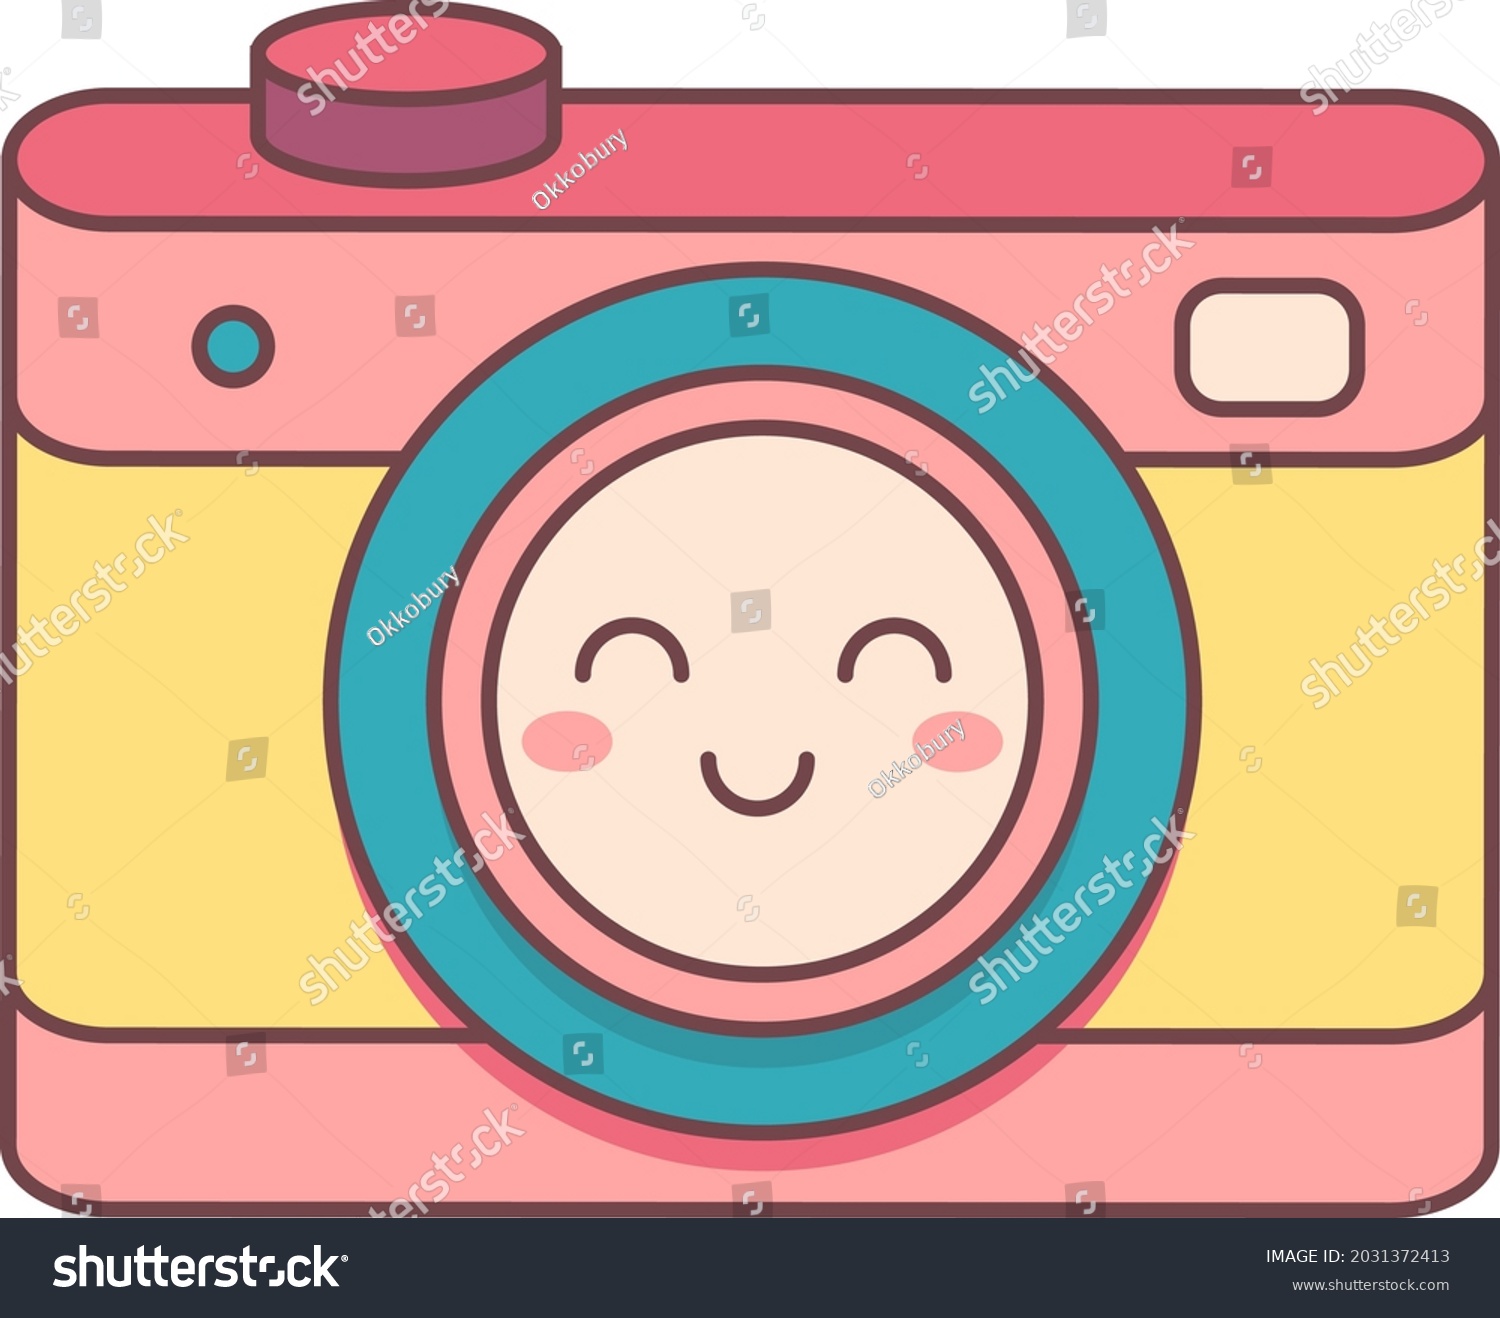 Cute Smiling Friendly Camera Kawaii Hand Stock Vector (Royalty Free ...